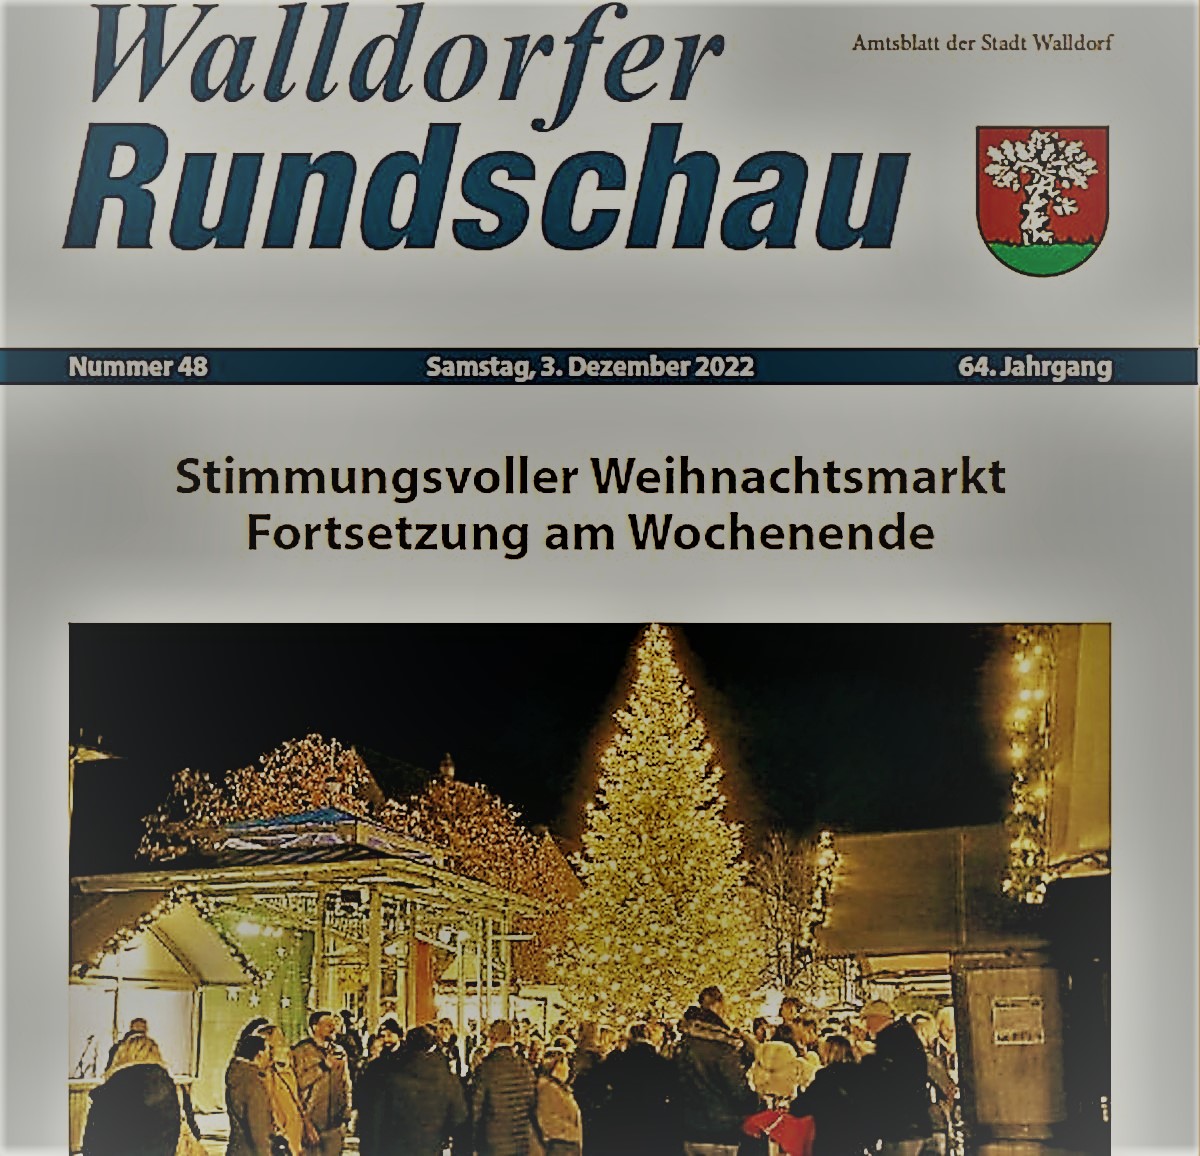 Die Walldorfer Rundschau 2022 Nr. 48 als E-paper | Bildschirmabgriff